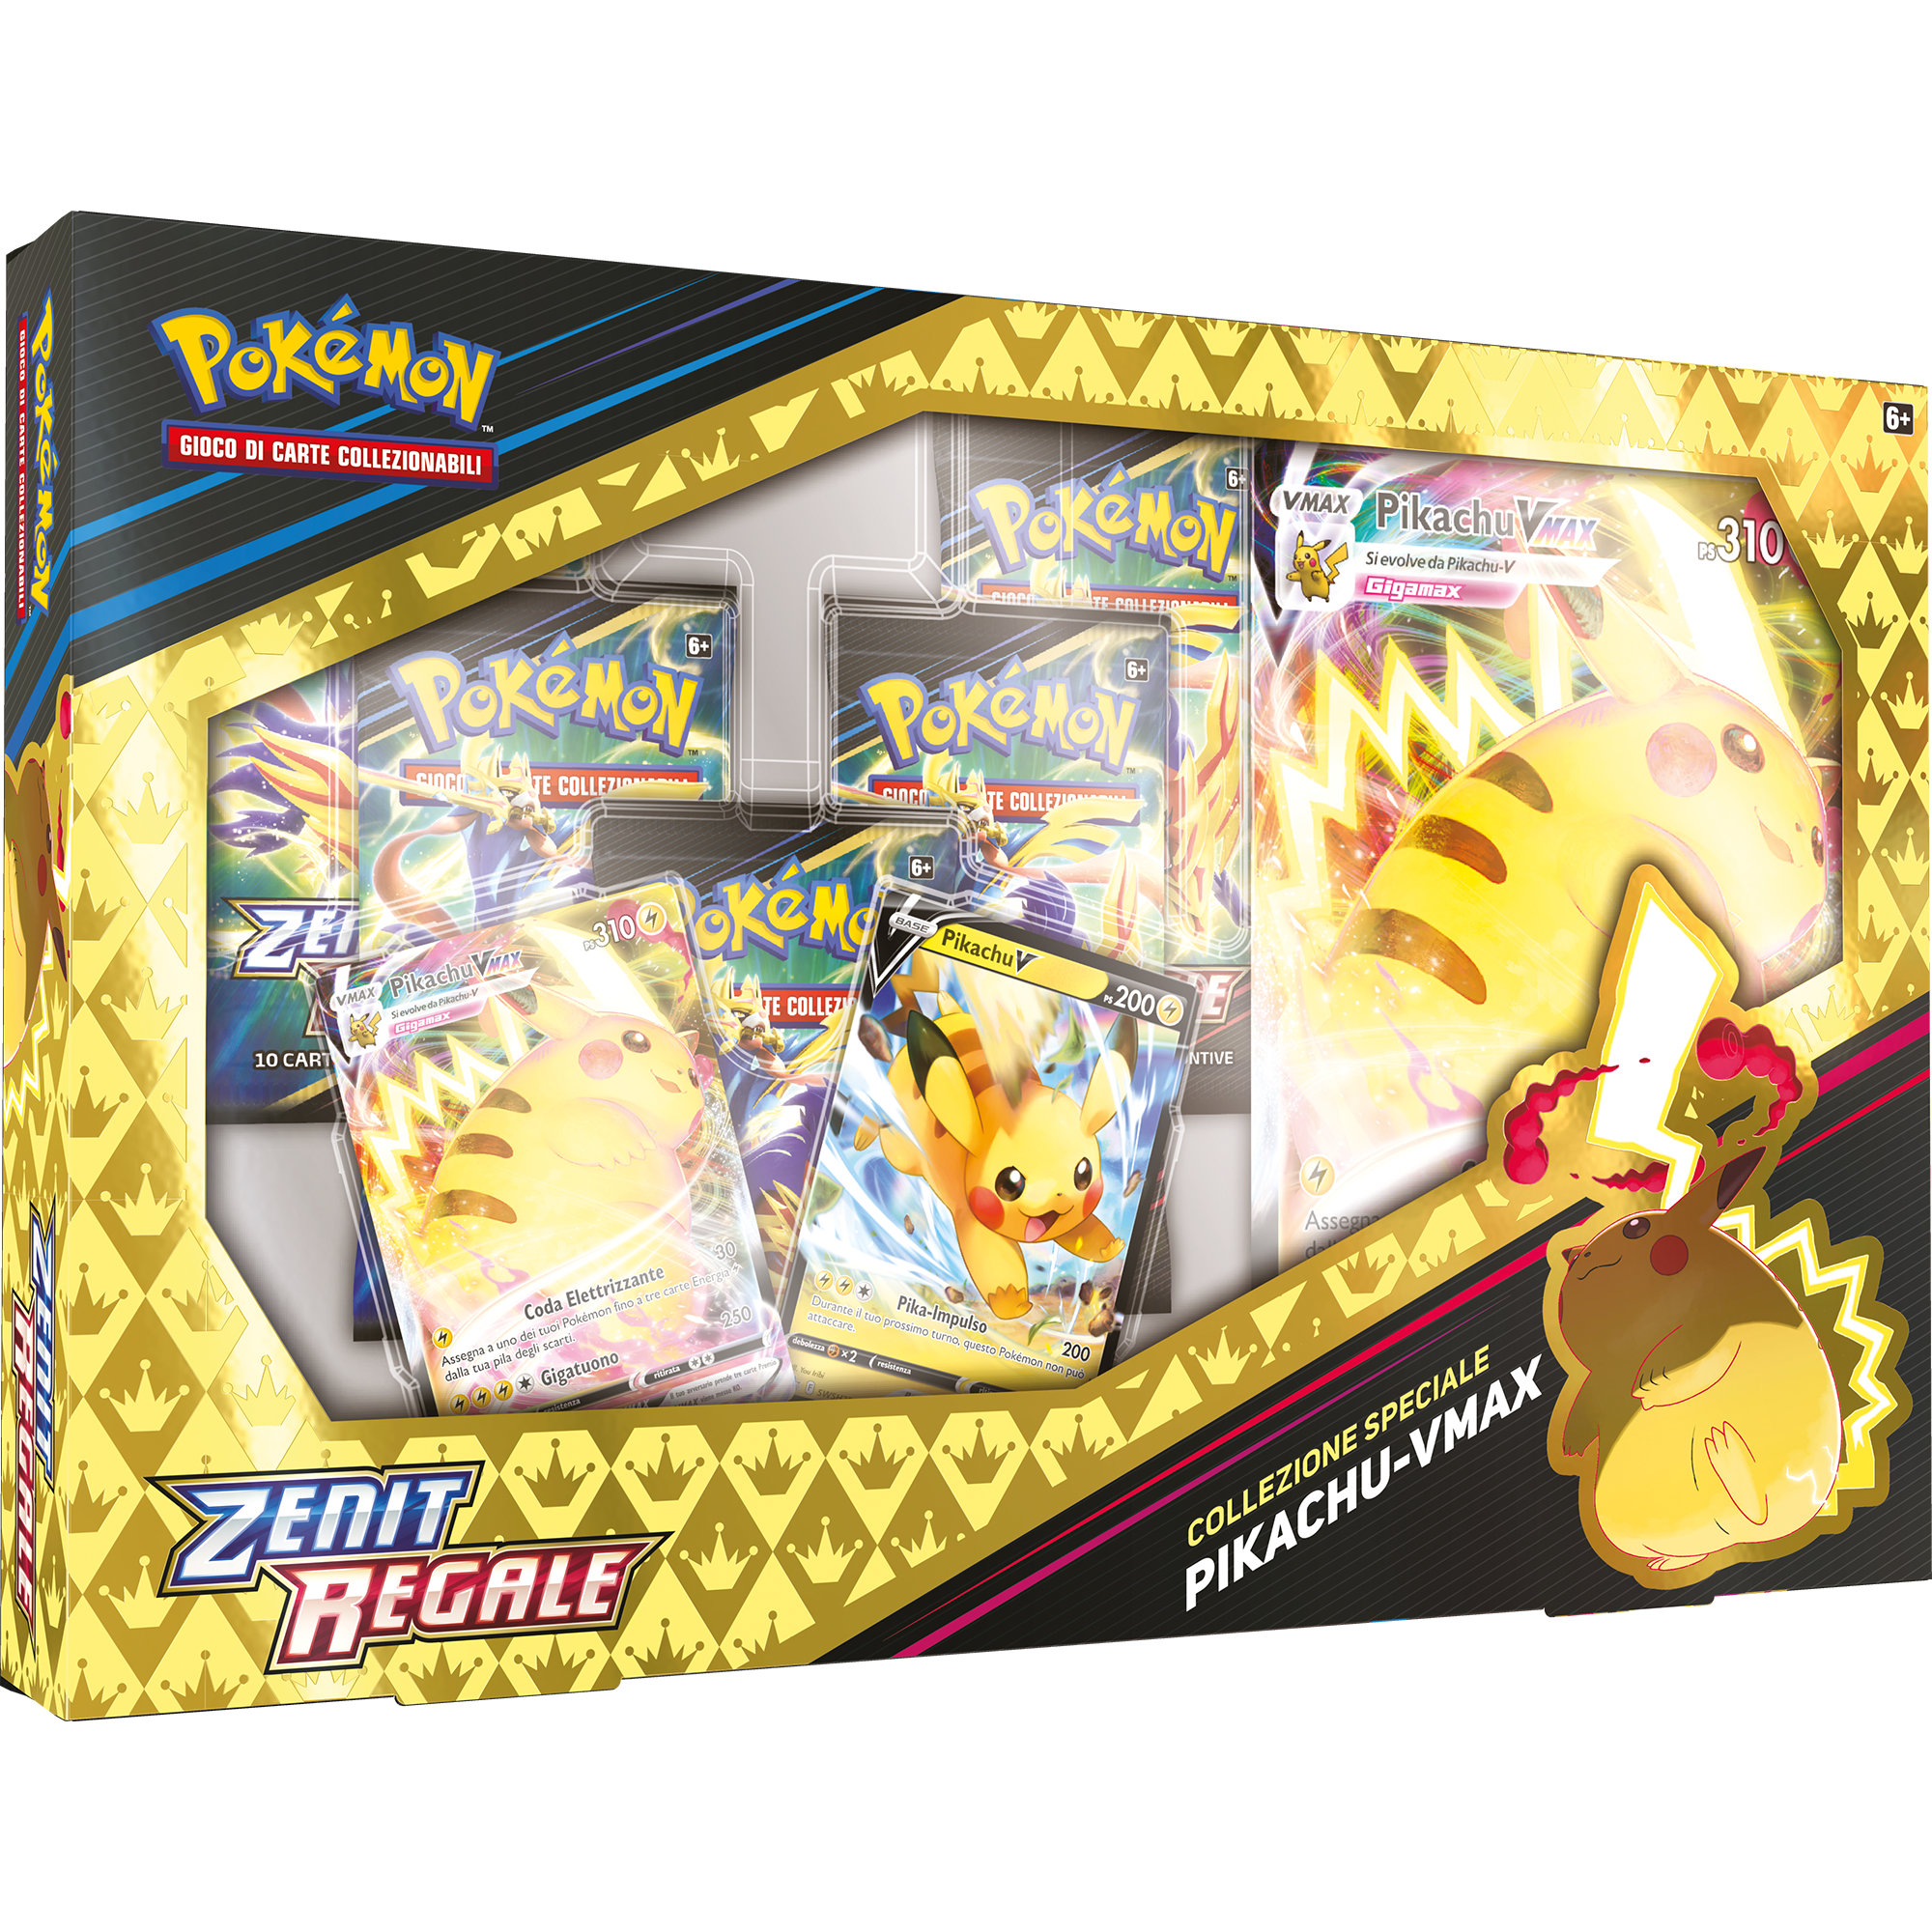 Pokemon collezione speciale pikachu-vmax zenit regale - POKEMON